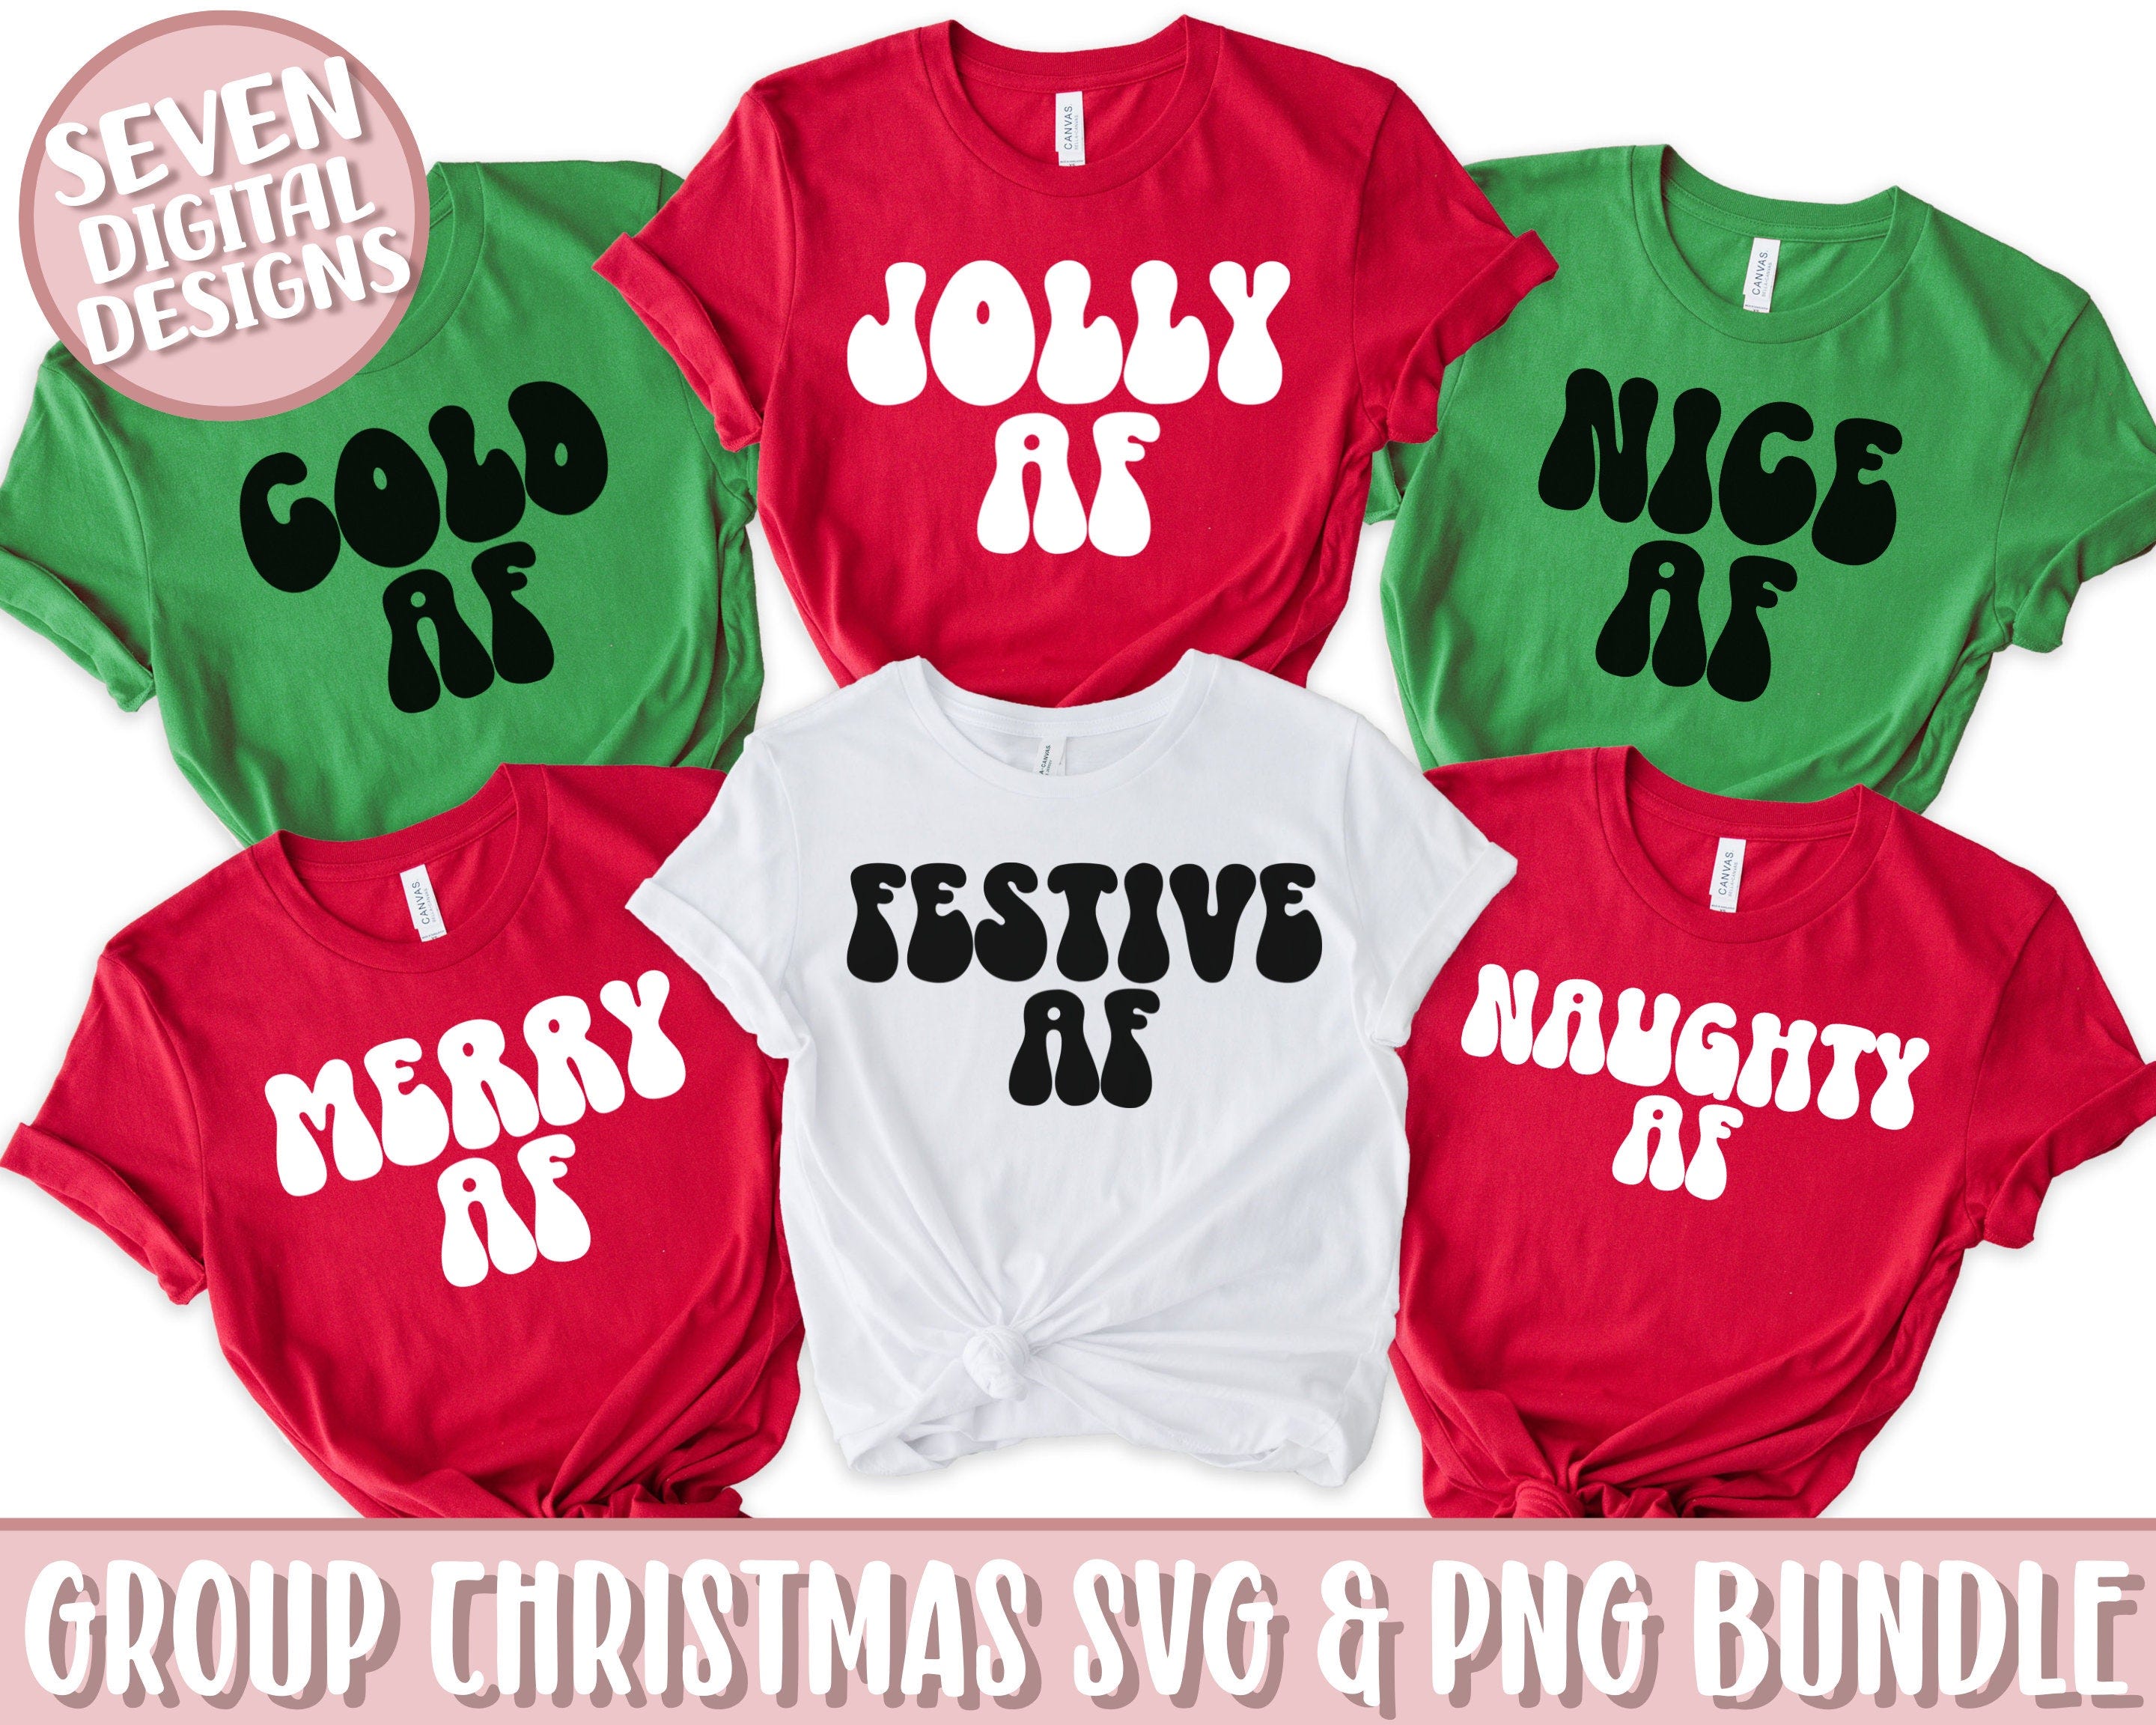 Group Christmas SVG & PNG Bundle, Family Christmas SVG Bundle, Matching Christmas Shirt Bundle Svg, Funny Christmas Svg, Friends Christmas